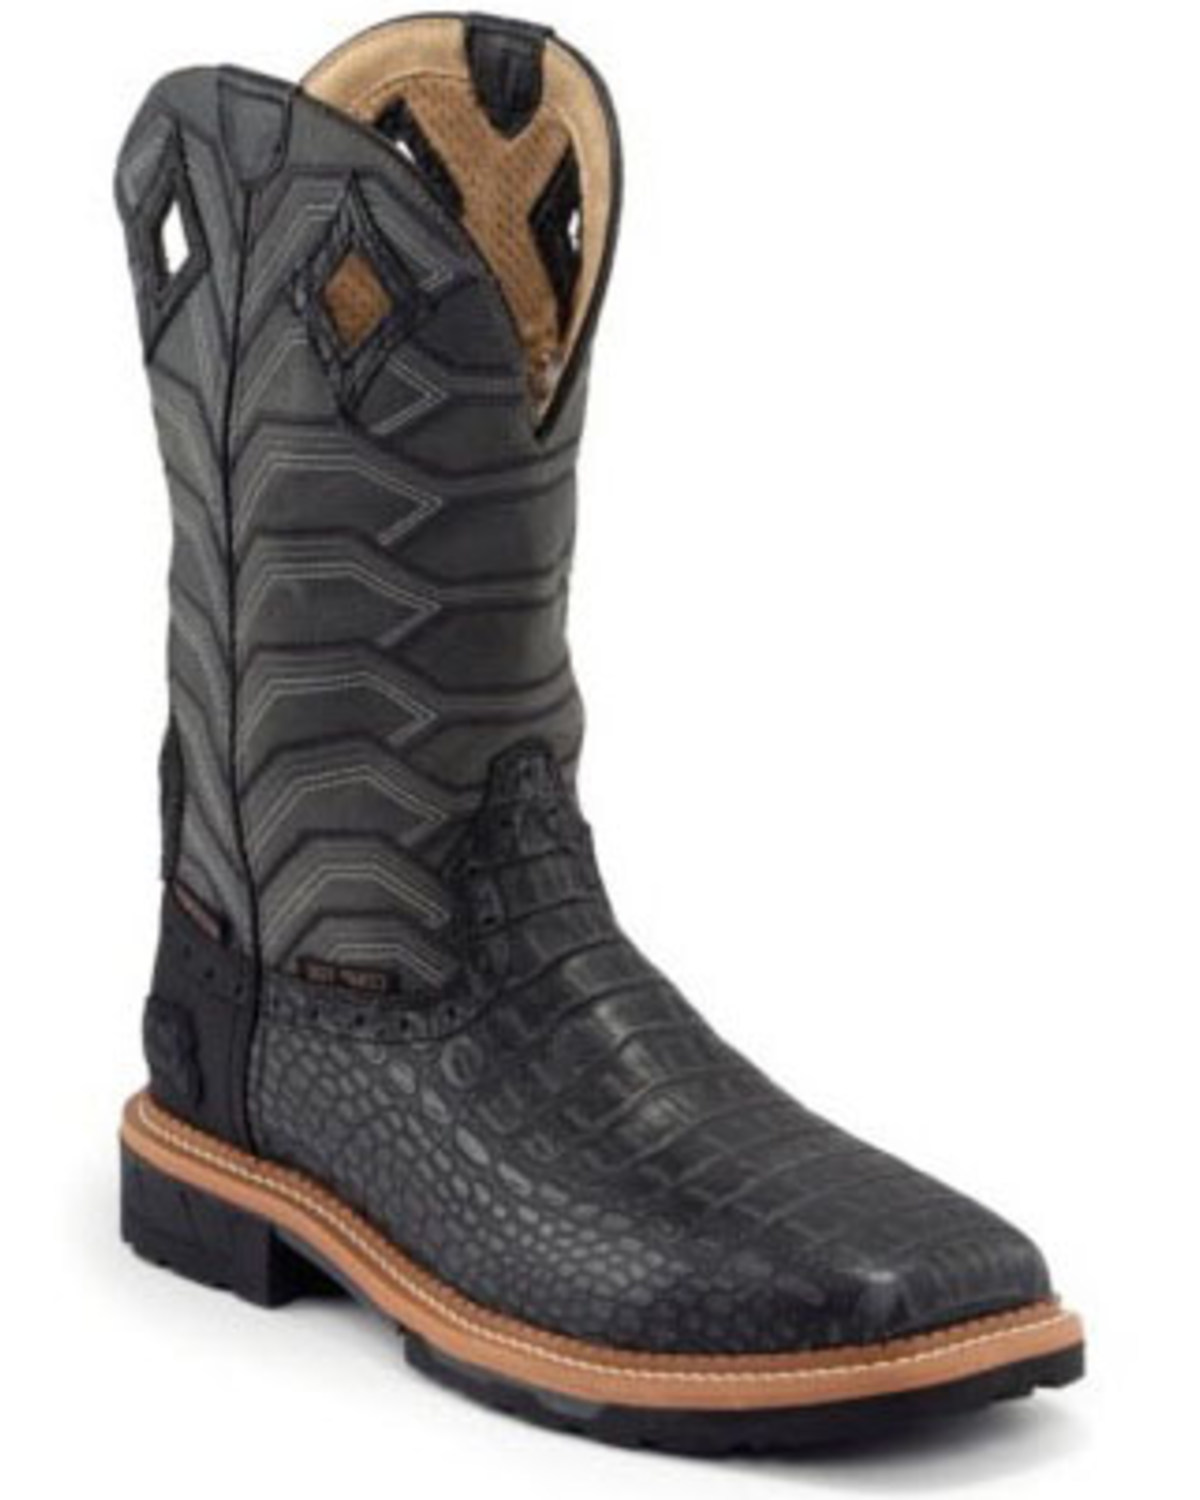 croc boots for men